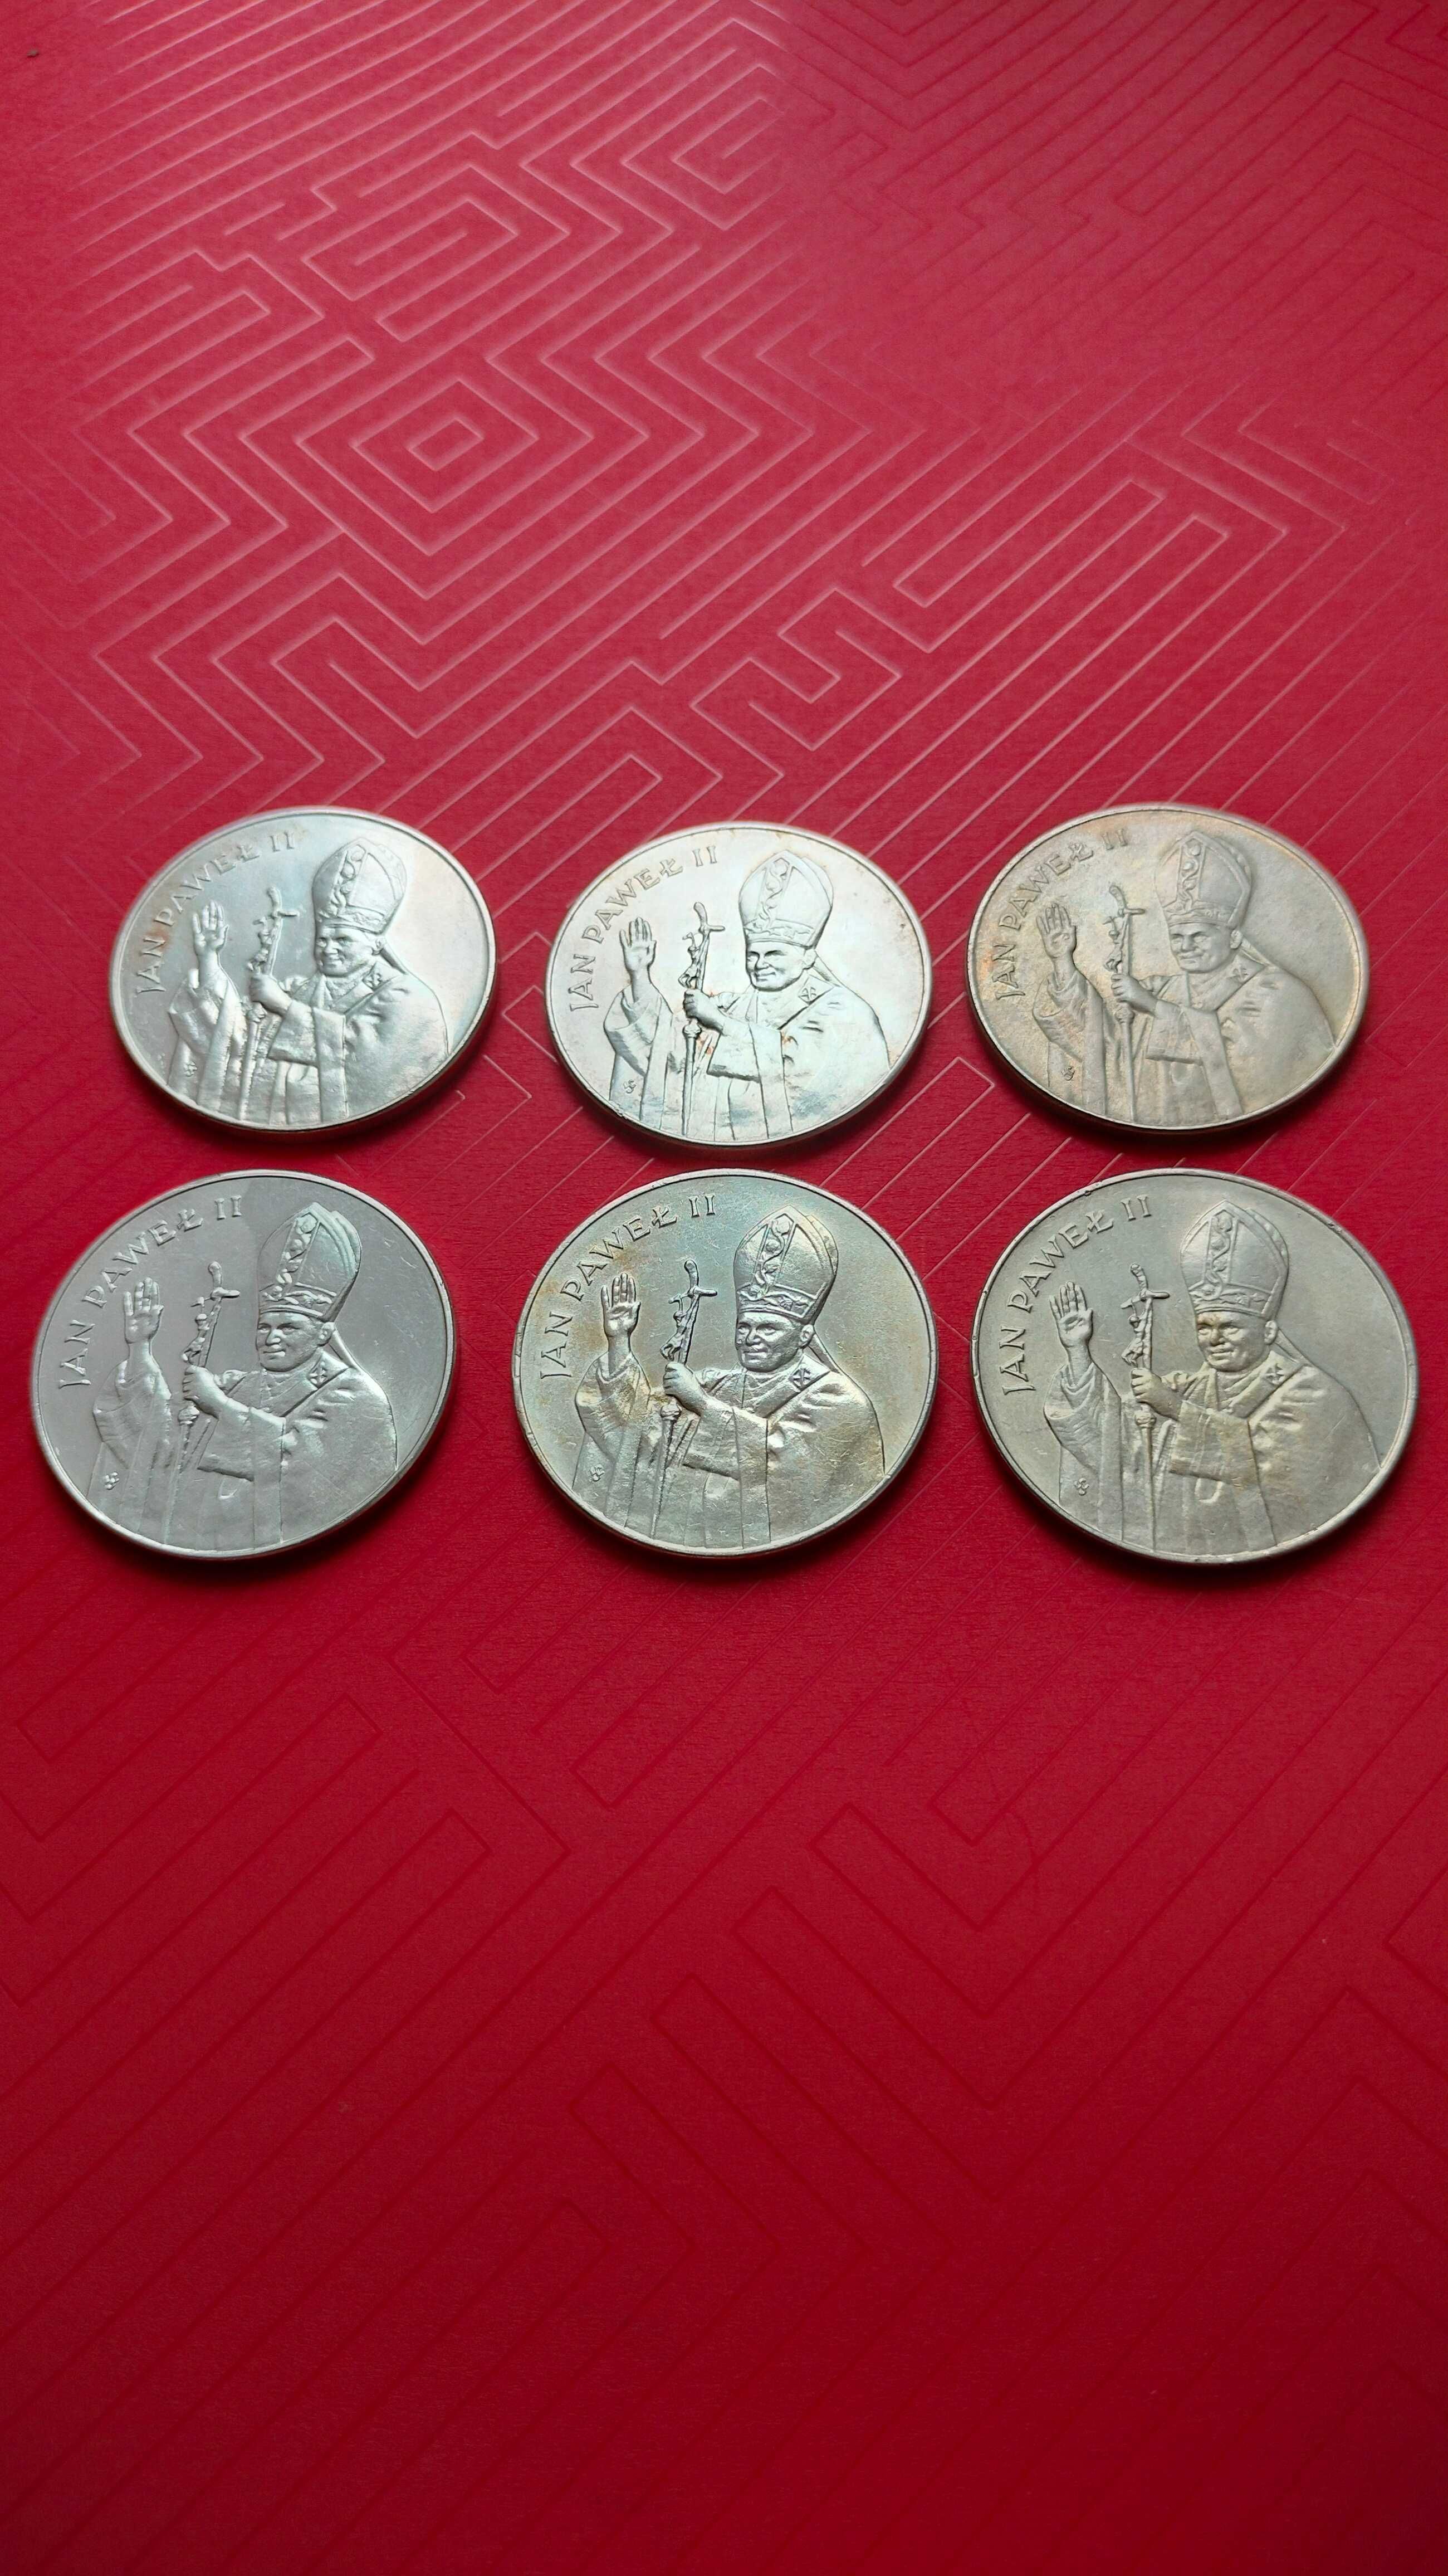 Monety srebrne 10000 zł. Papież. 6 monet  inwestycja